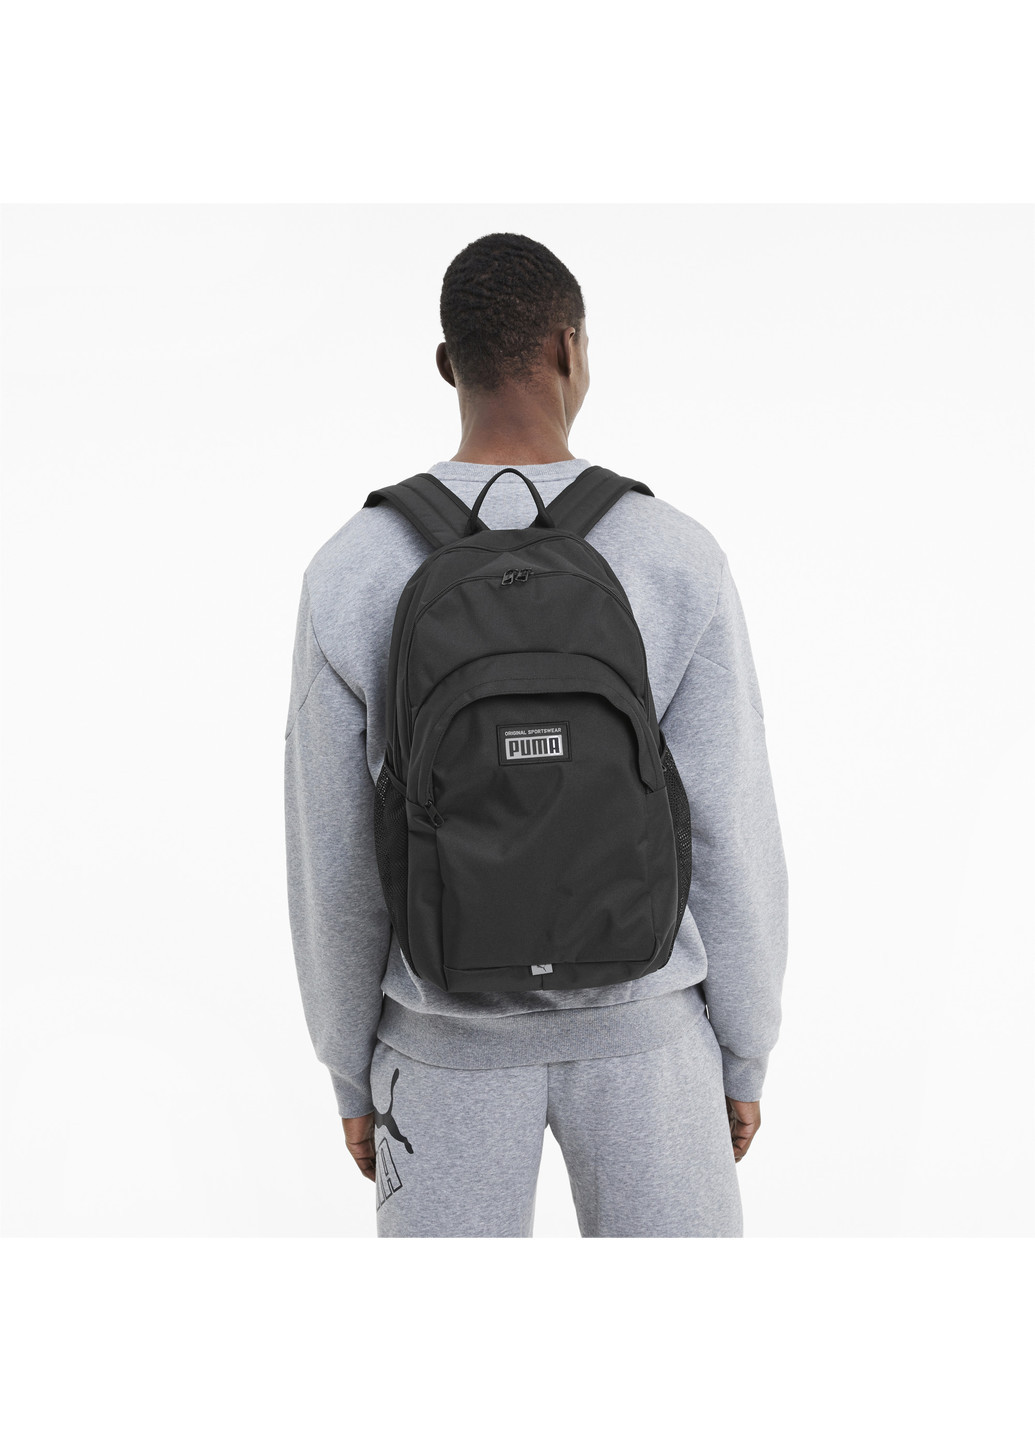 Рюкзак Academy Backpack Puma однотонный чёрный спортивный